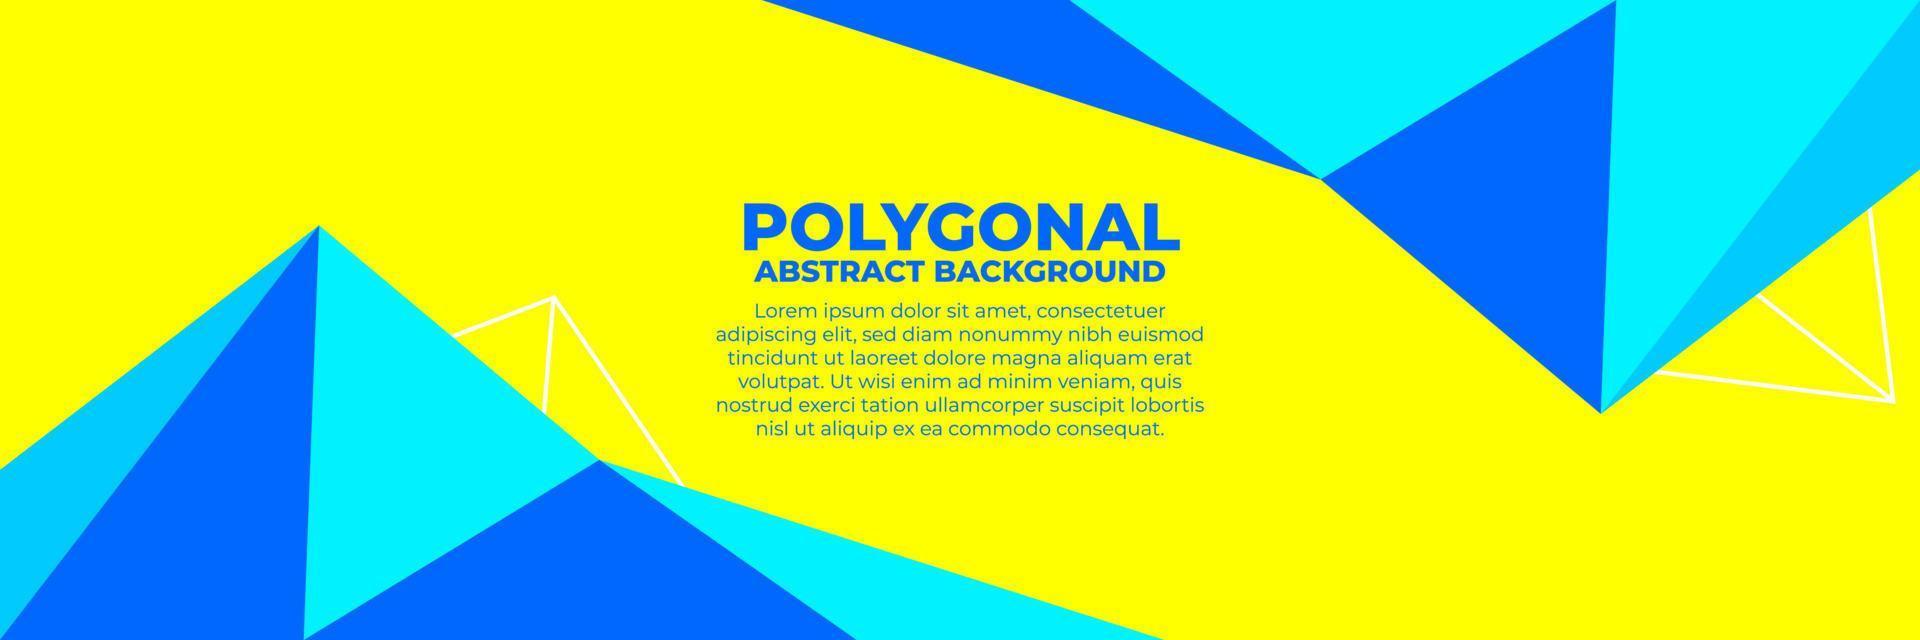 geometrischer polygonaler abstrakter hintergrund mit dreiecken trendige frische farbkombination, low-poly-banner horizontal mit kopierraum für platztext oder objekt vektor